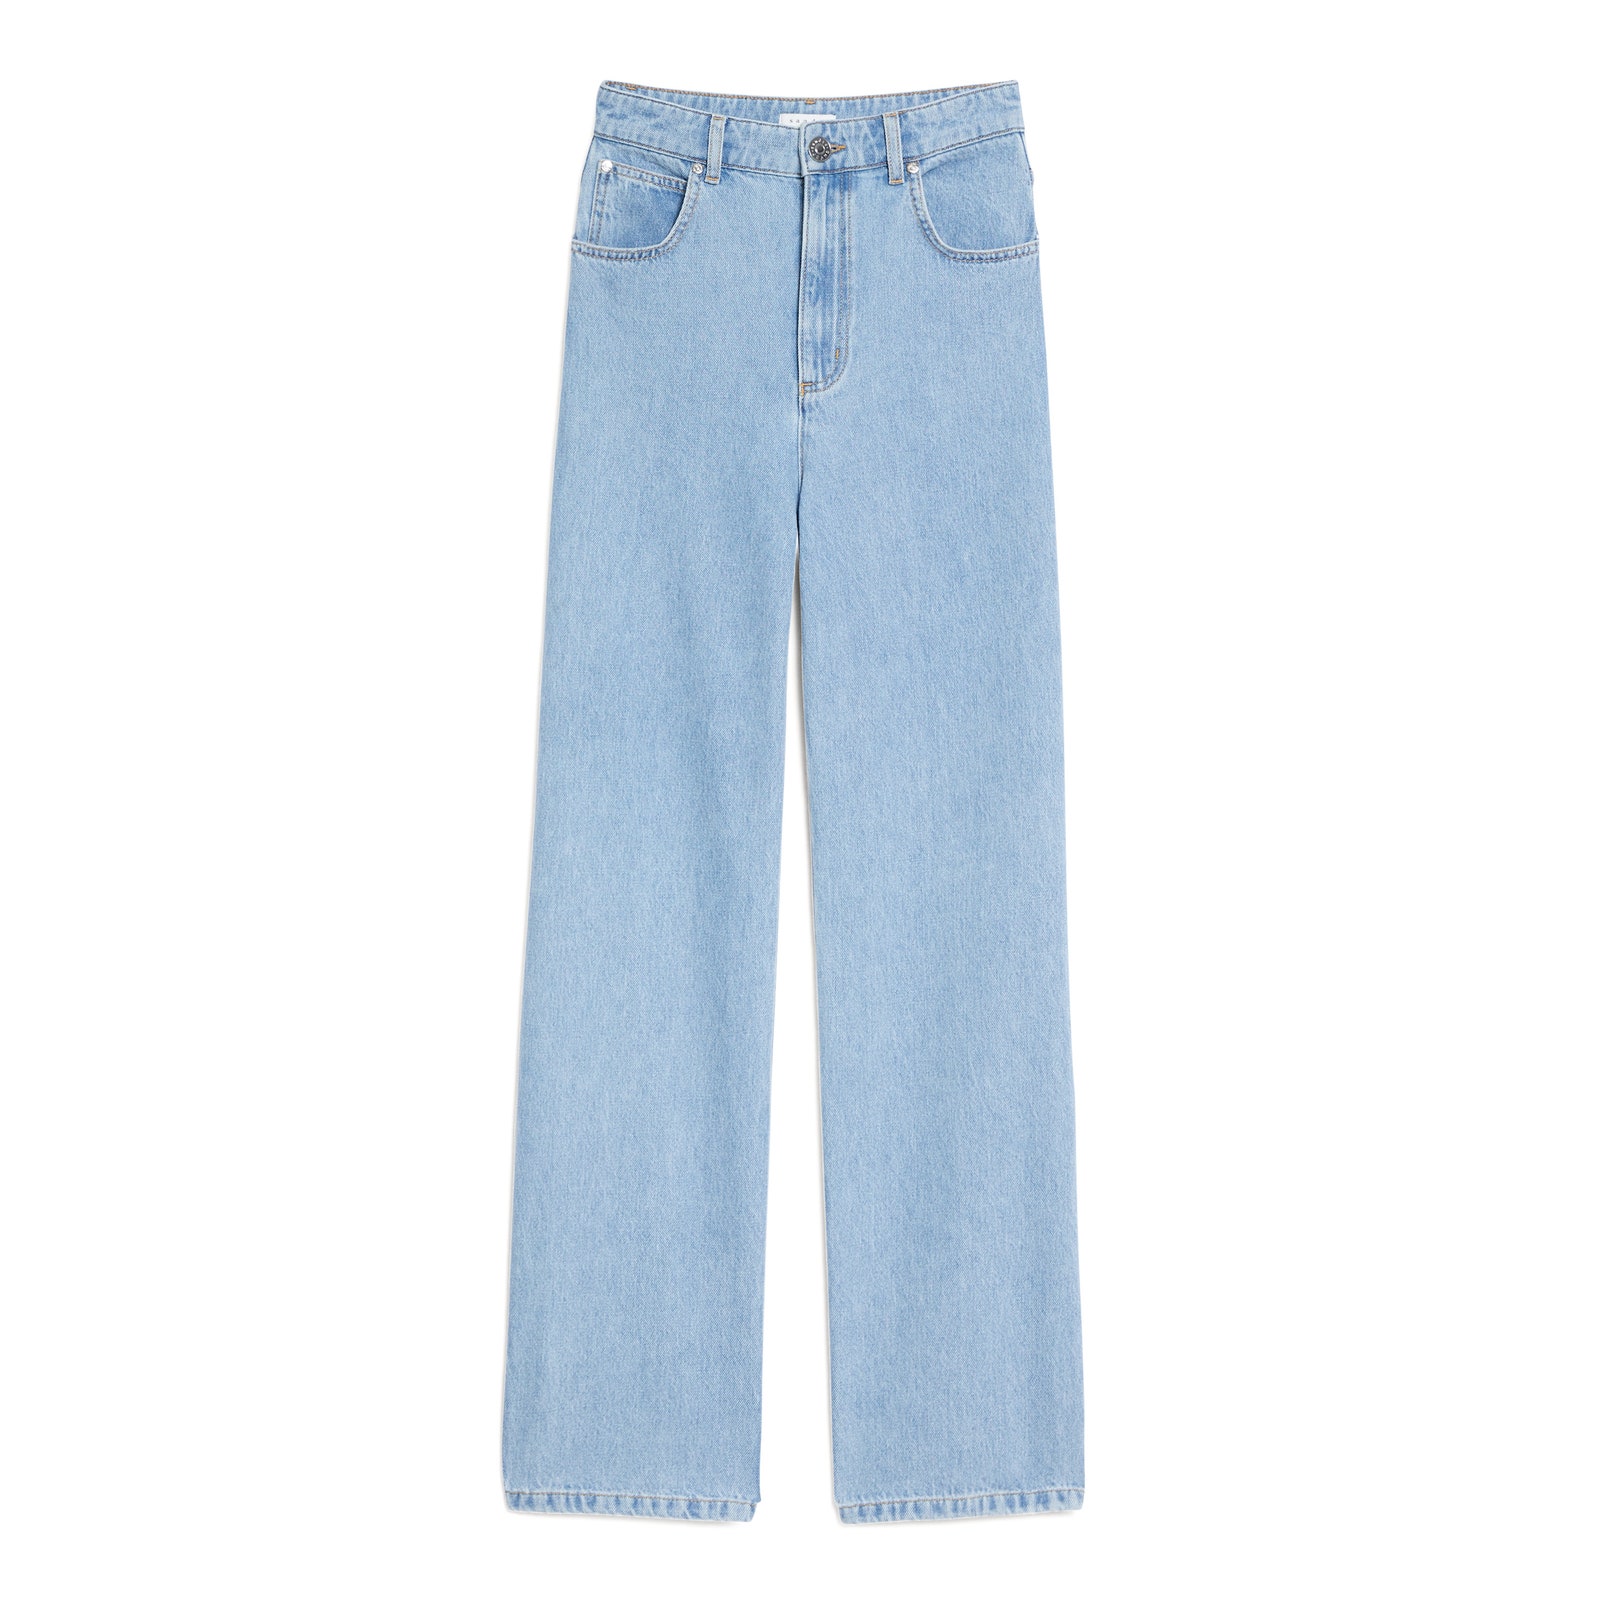 Твидовые жакеты и идеальные джинсы что искать в осенней коллекции Sandro